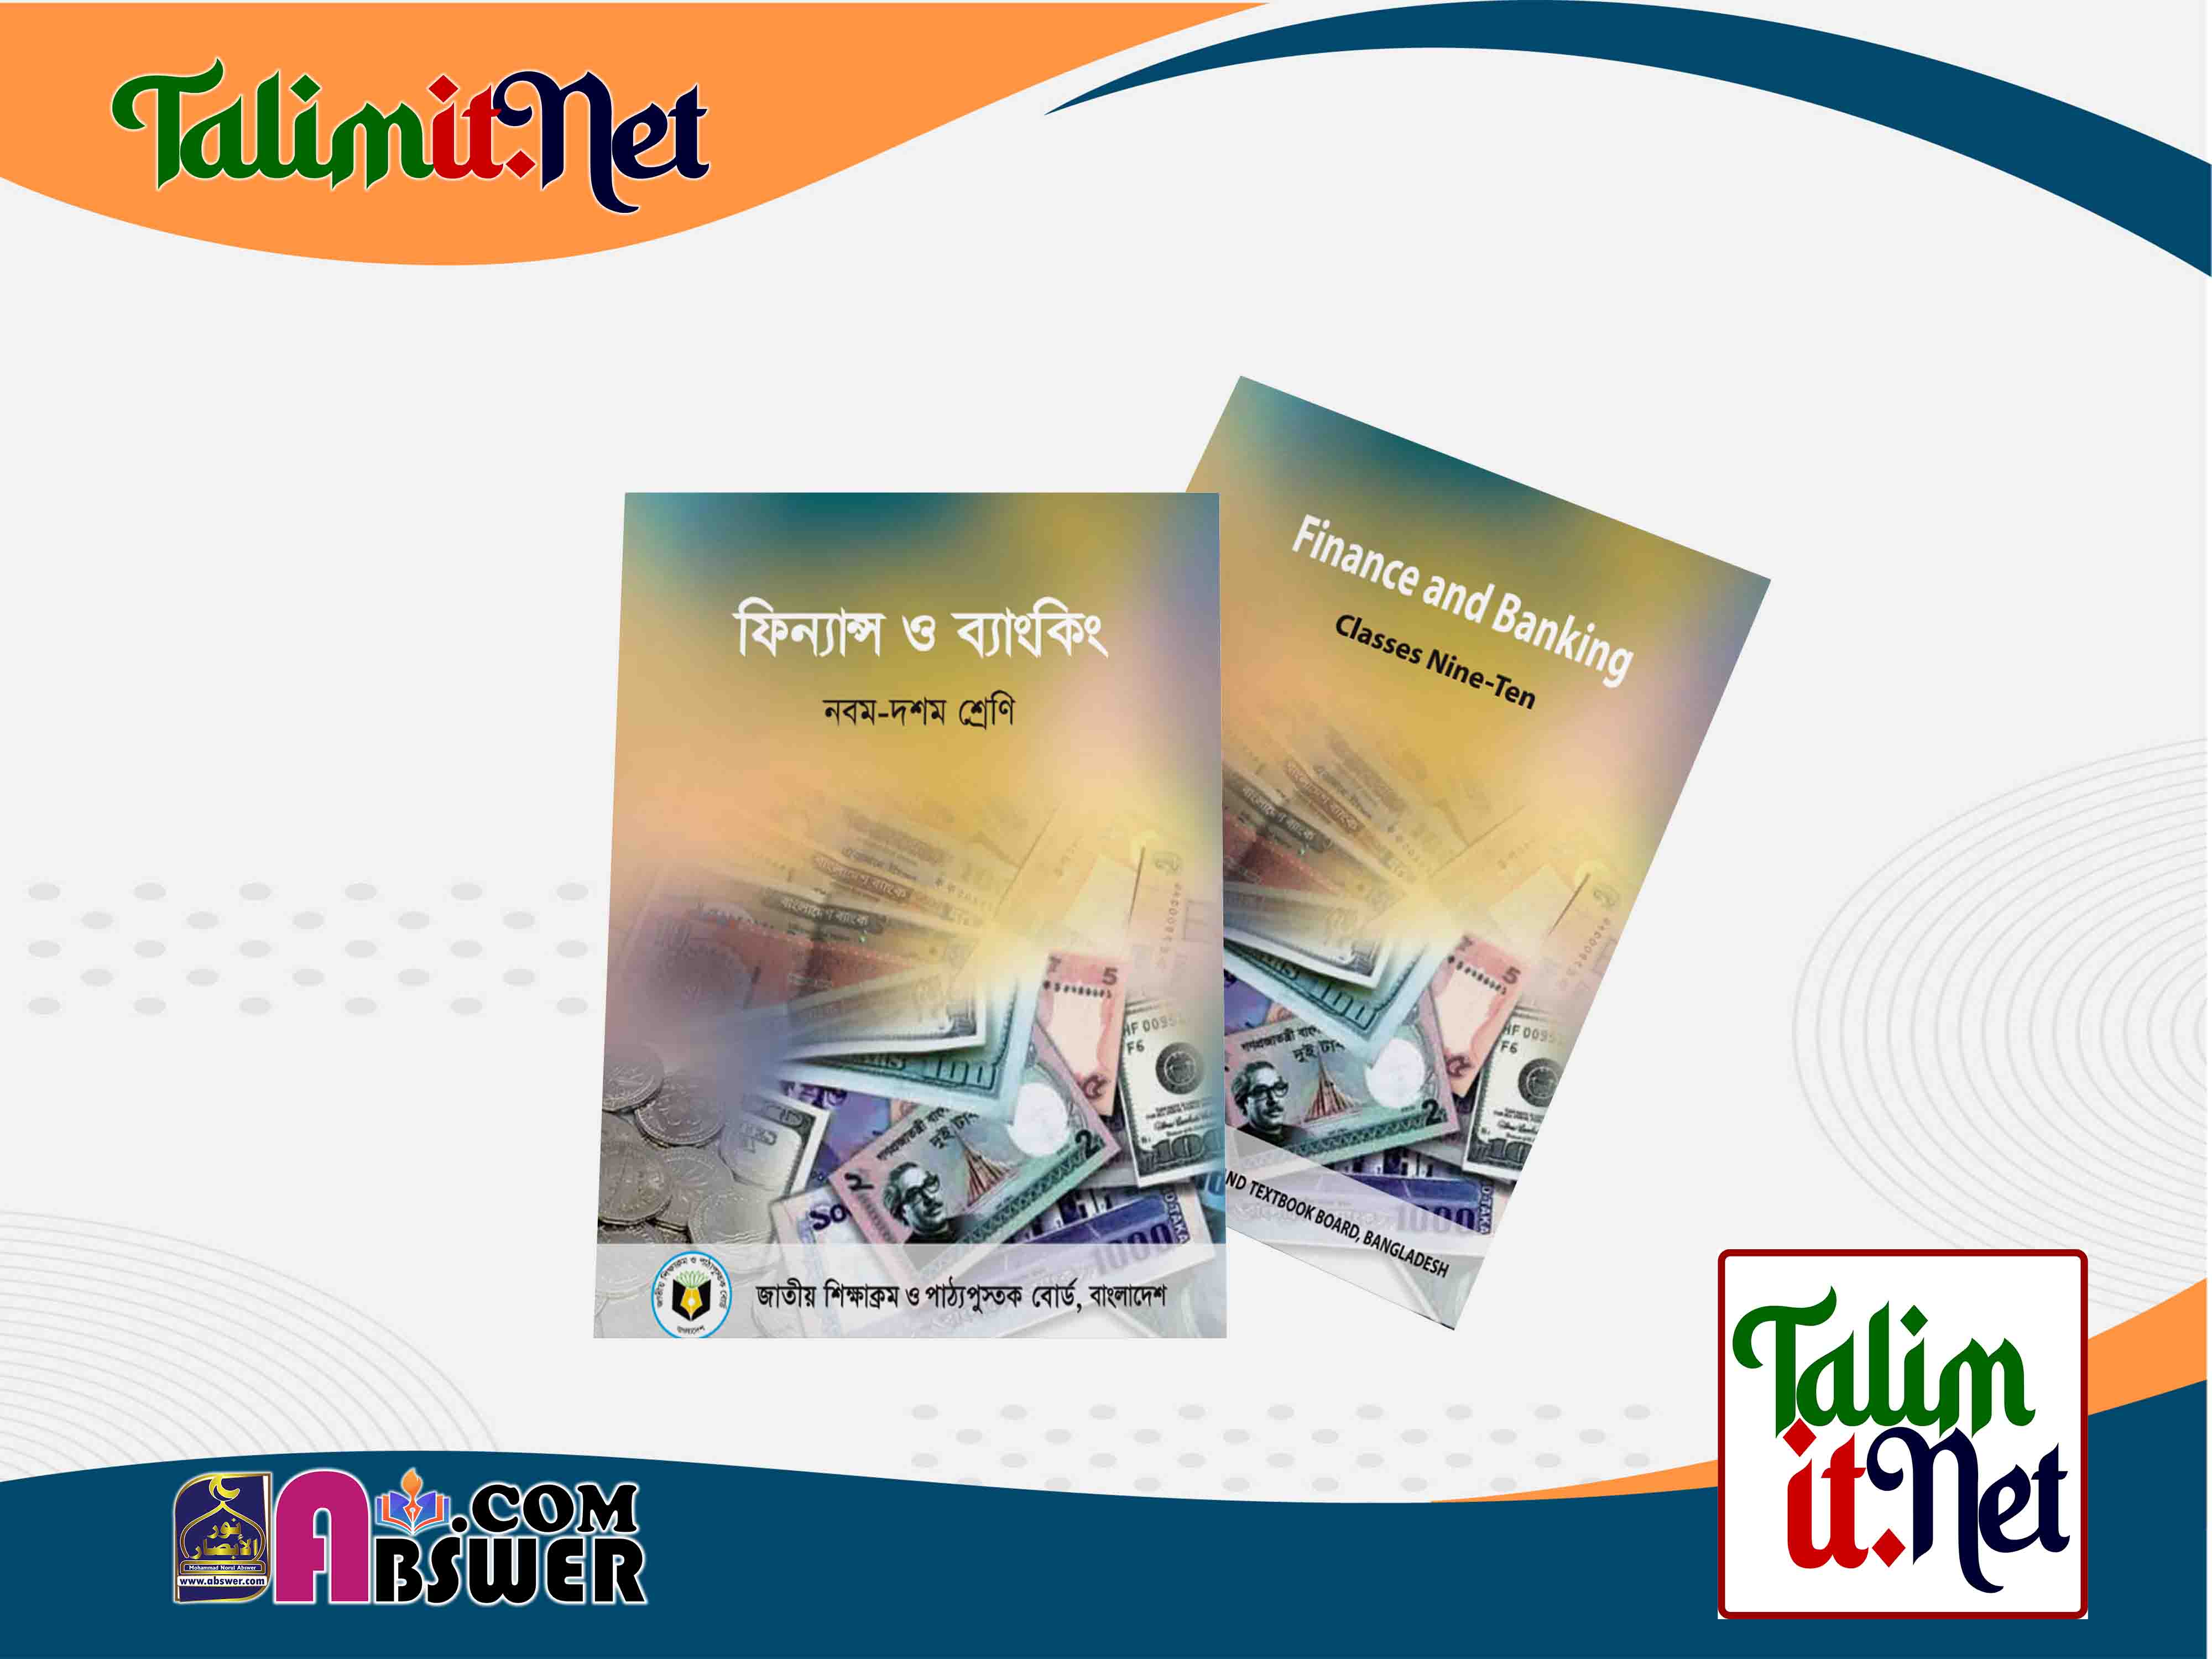 ফিন্যান্স ও ব্যাংকিং - মাধ্যমিক ৯ম-১০ম শ্রেণির স্কুলের পাঠ্যবই ২০২৩ পিডিএফ | Finance Banking - Secondary Class 9-10 Bangla-English Version School Book 2023 NCTB Pdf